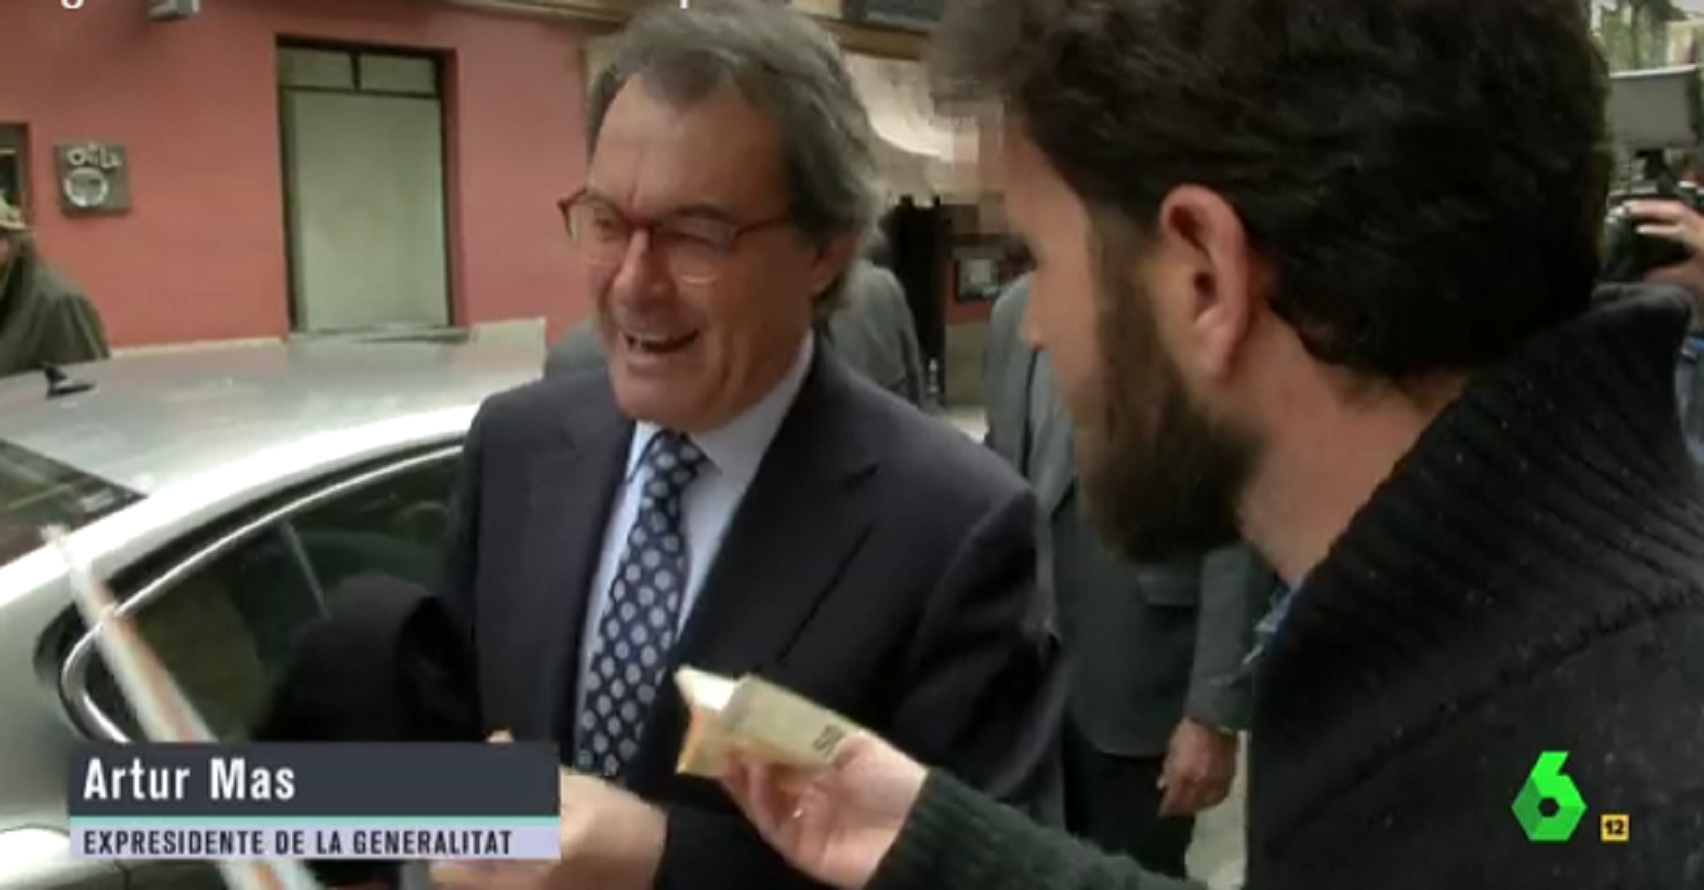 'El Intermedio' pone en jaque a Mas con un billete de 100 euros